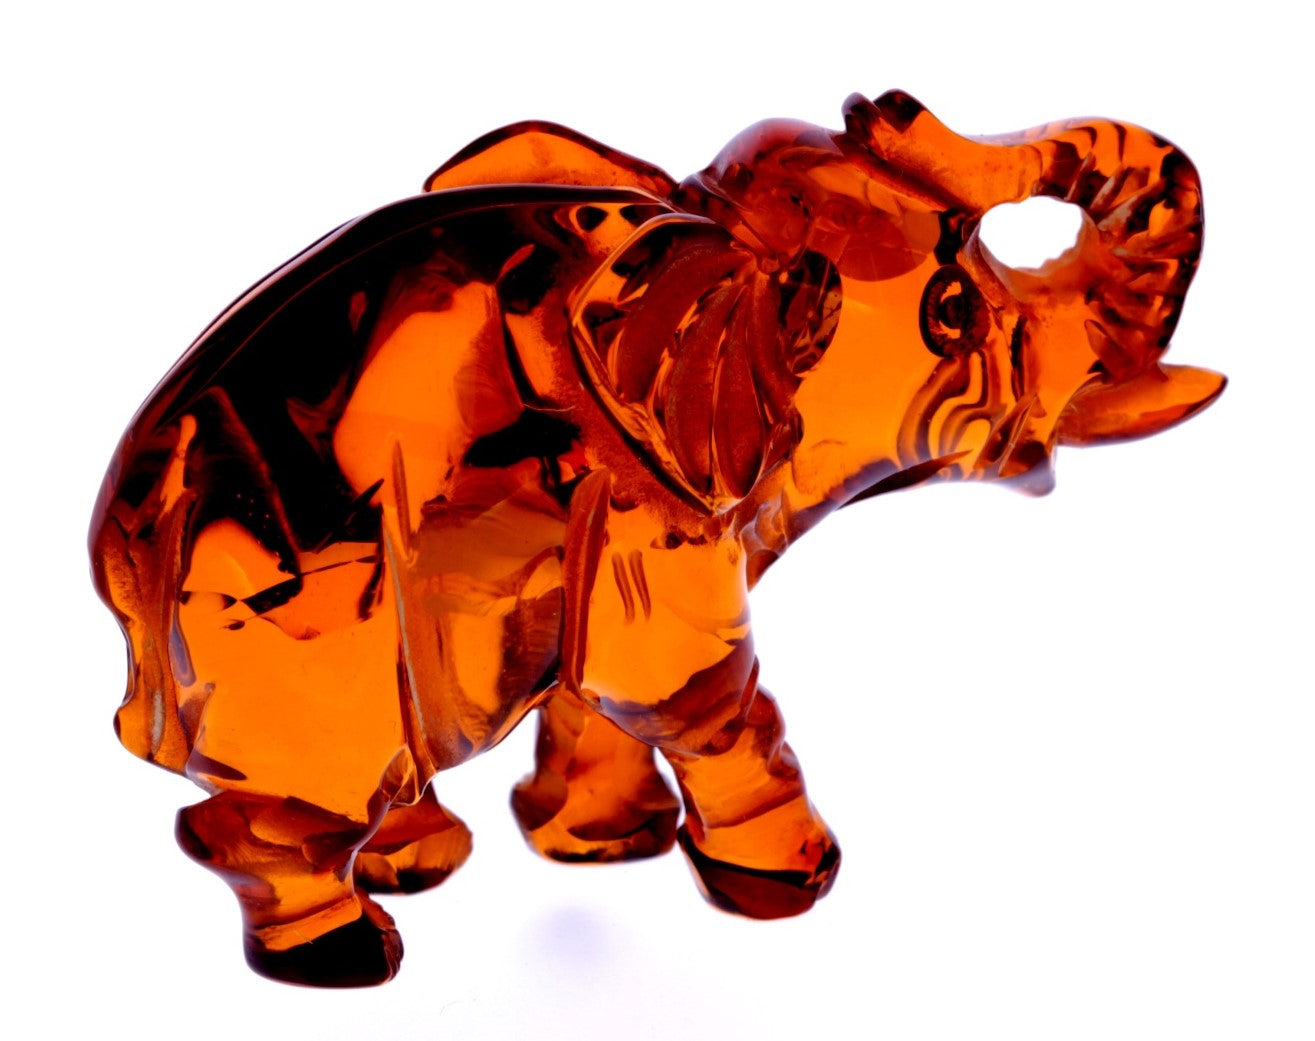 Figurine Superb Quality Handmade Natural Carved Elephant made of Genuine Baltic Amber - CRV72